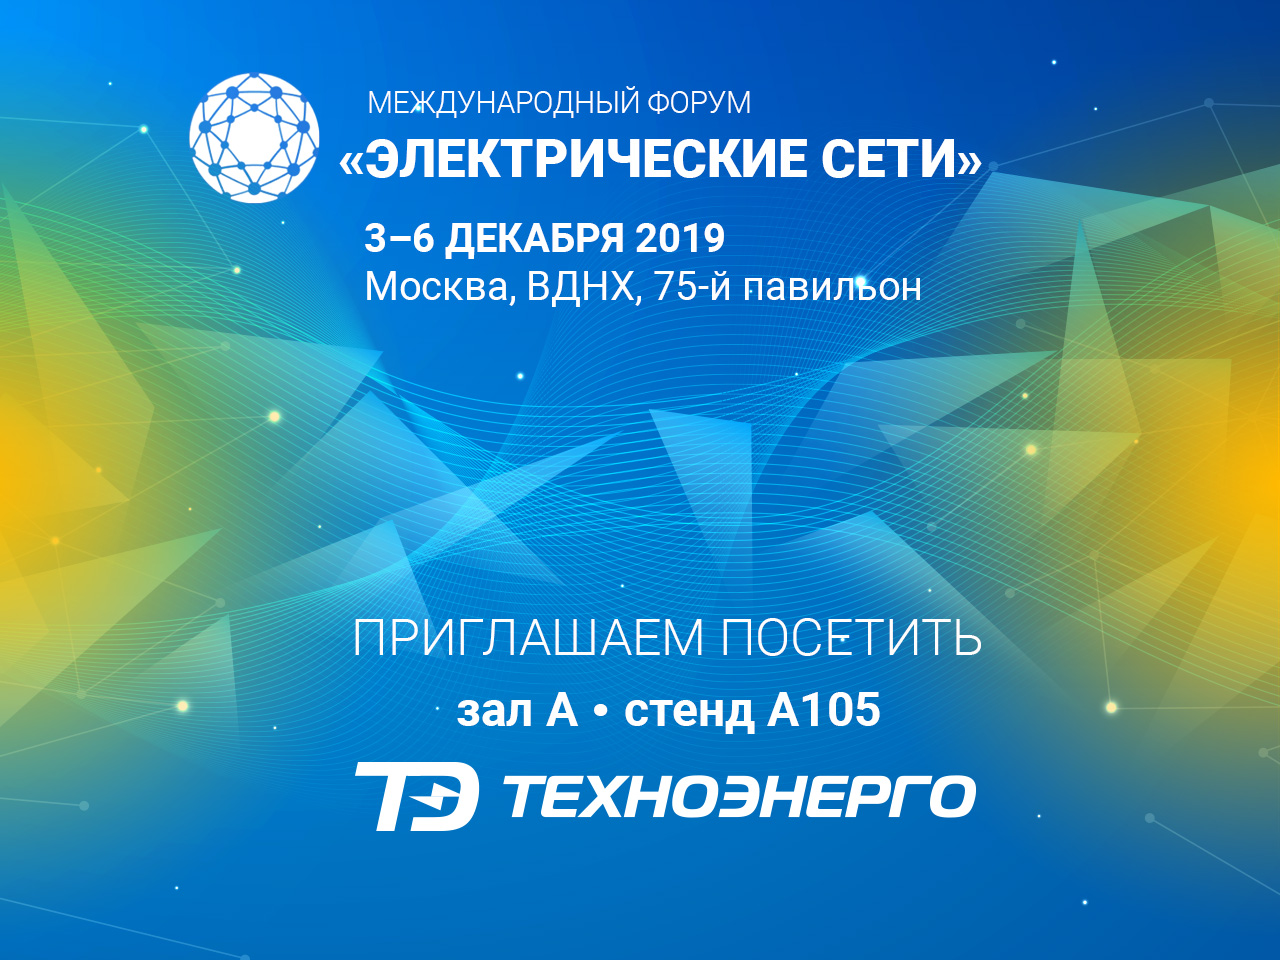 Участие в Международном форуме «Электрические сети», г. Москва